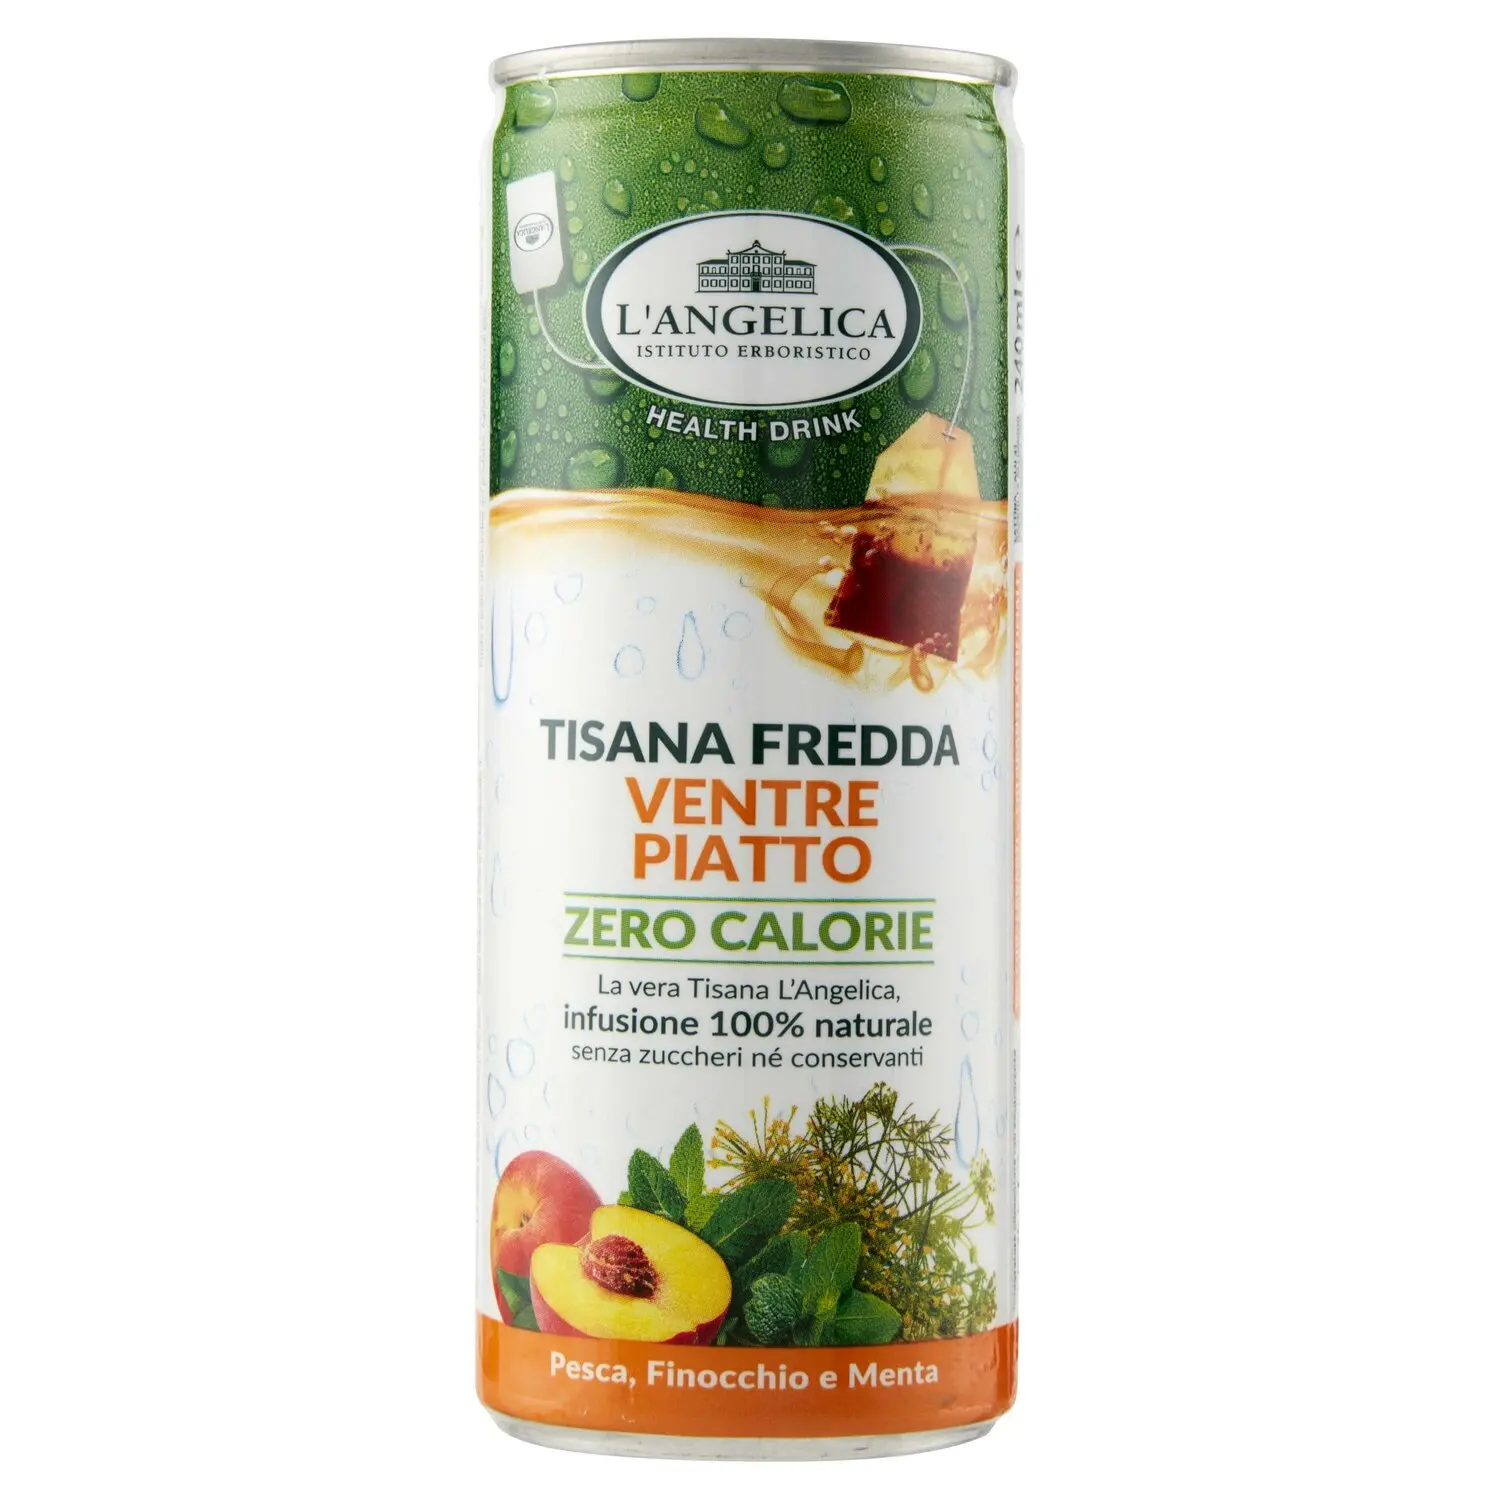 L'Angelica Health Drink Tisana Fredda Ventre Piatto Zero Calorie